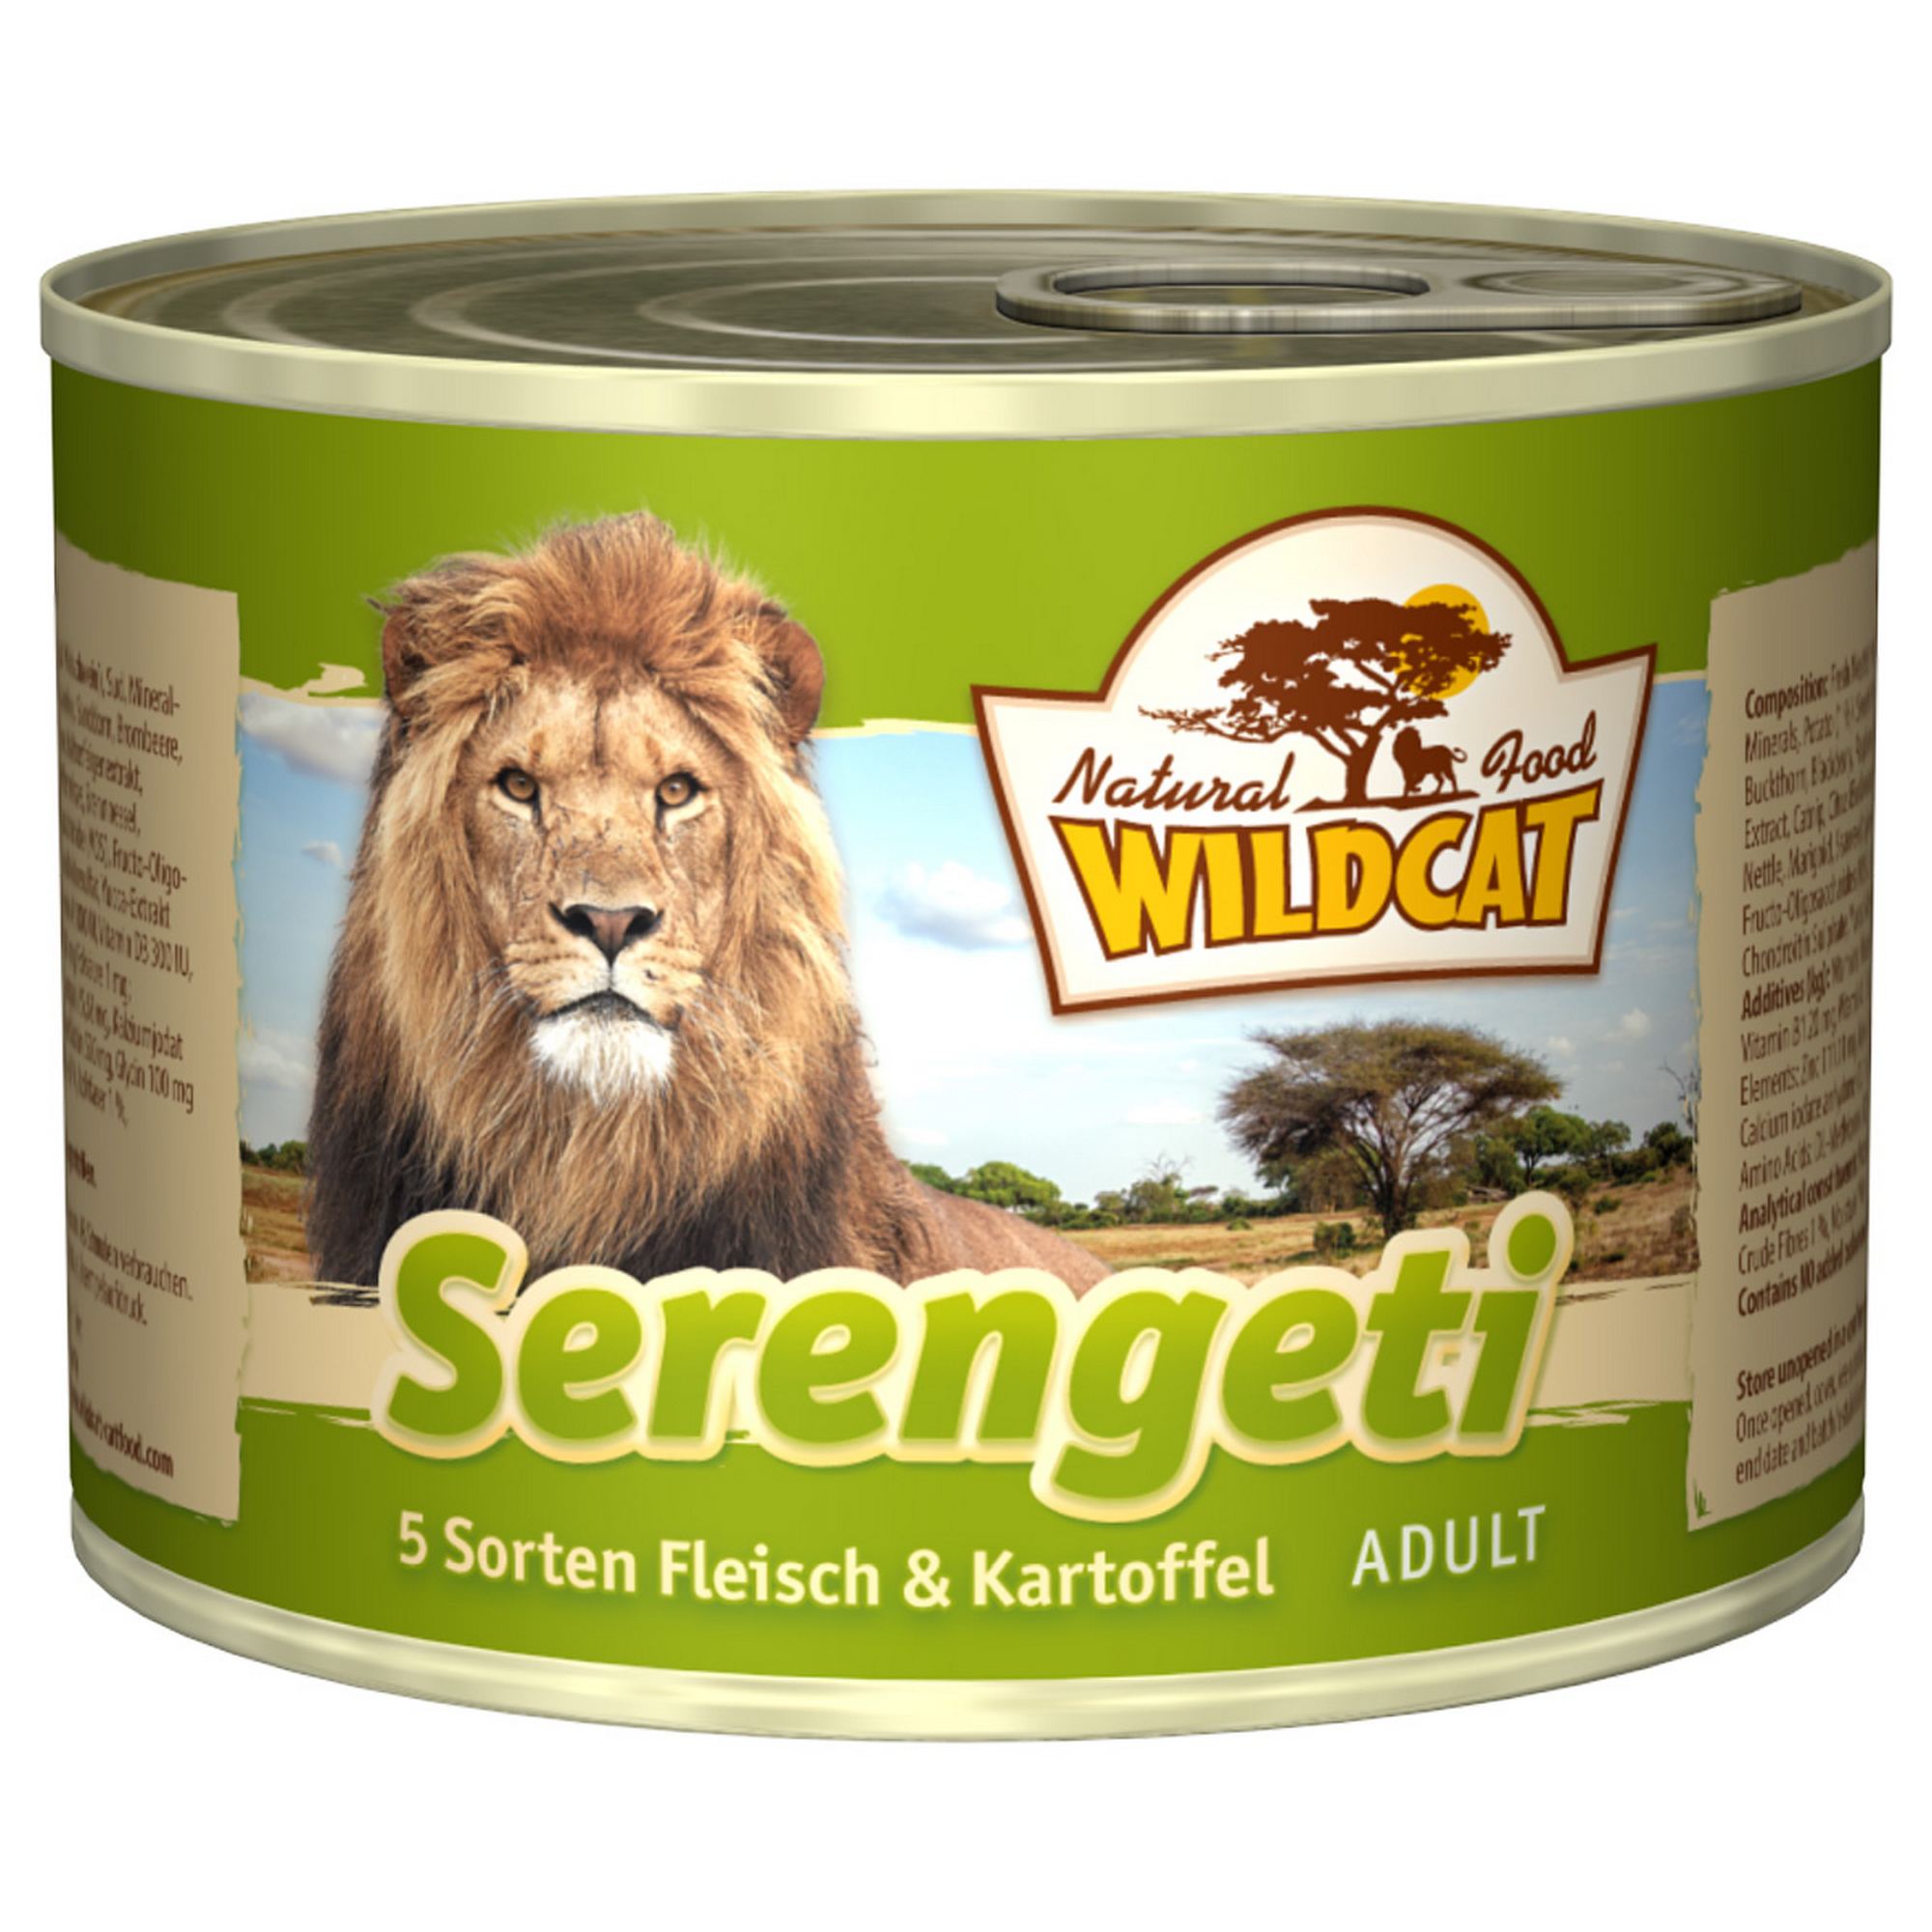 Katzennassfutter 'Serengeti' Adult,  mit Geflügel, Rind und Wildschwein, 200 g + product picture